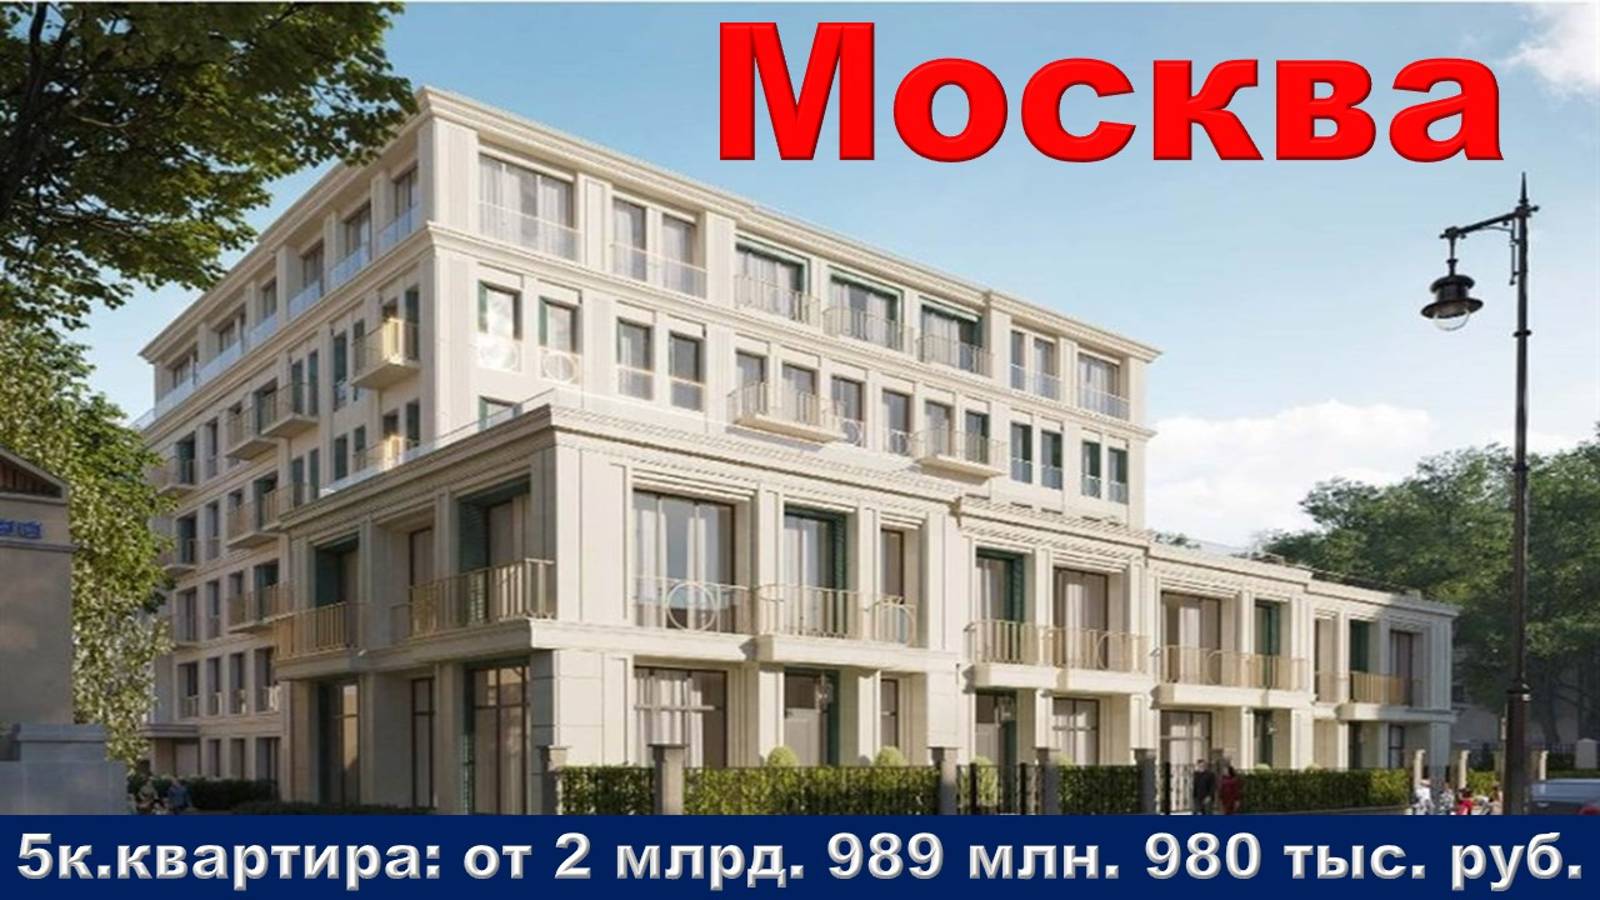 Москва. 5к. квартира от 2 млрд. 989 млн. 980 тыс. руб.